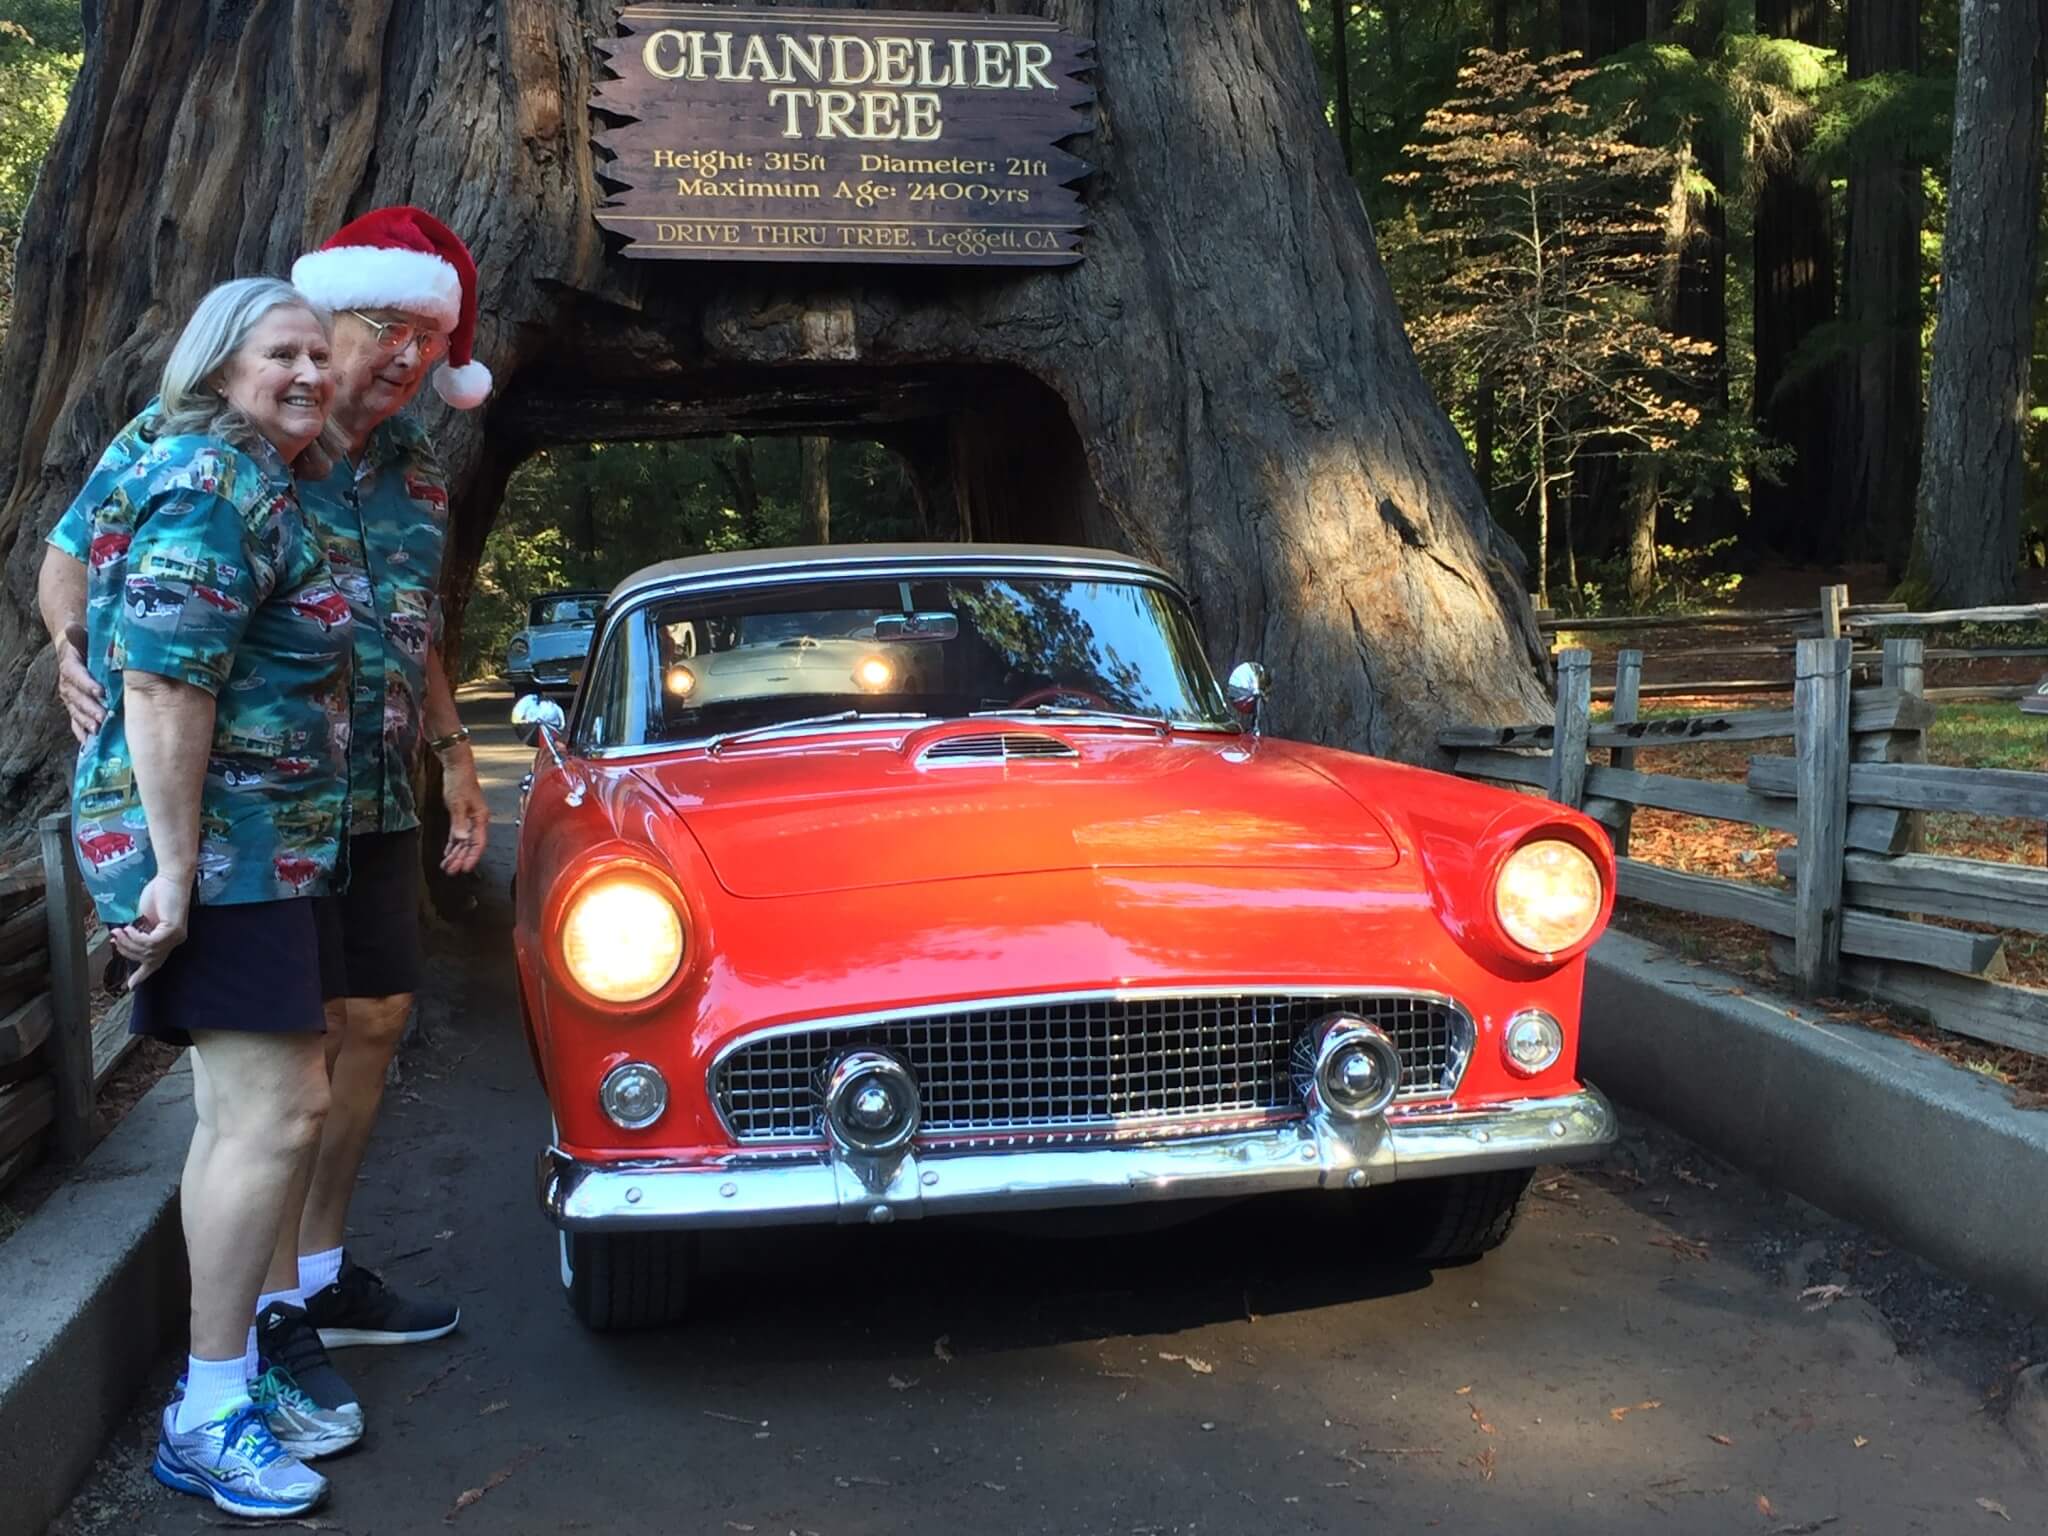 Årets julefoto er på plads for dette venlige Thunderbird-elskende par fra Los Angeles.